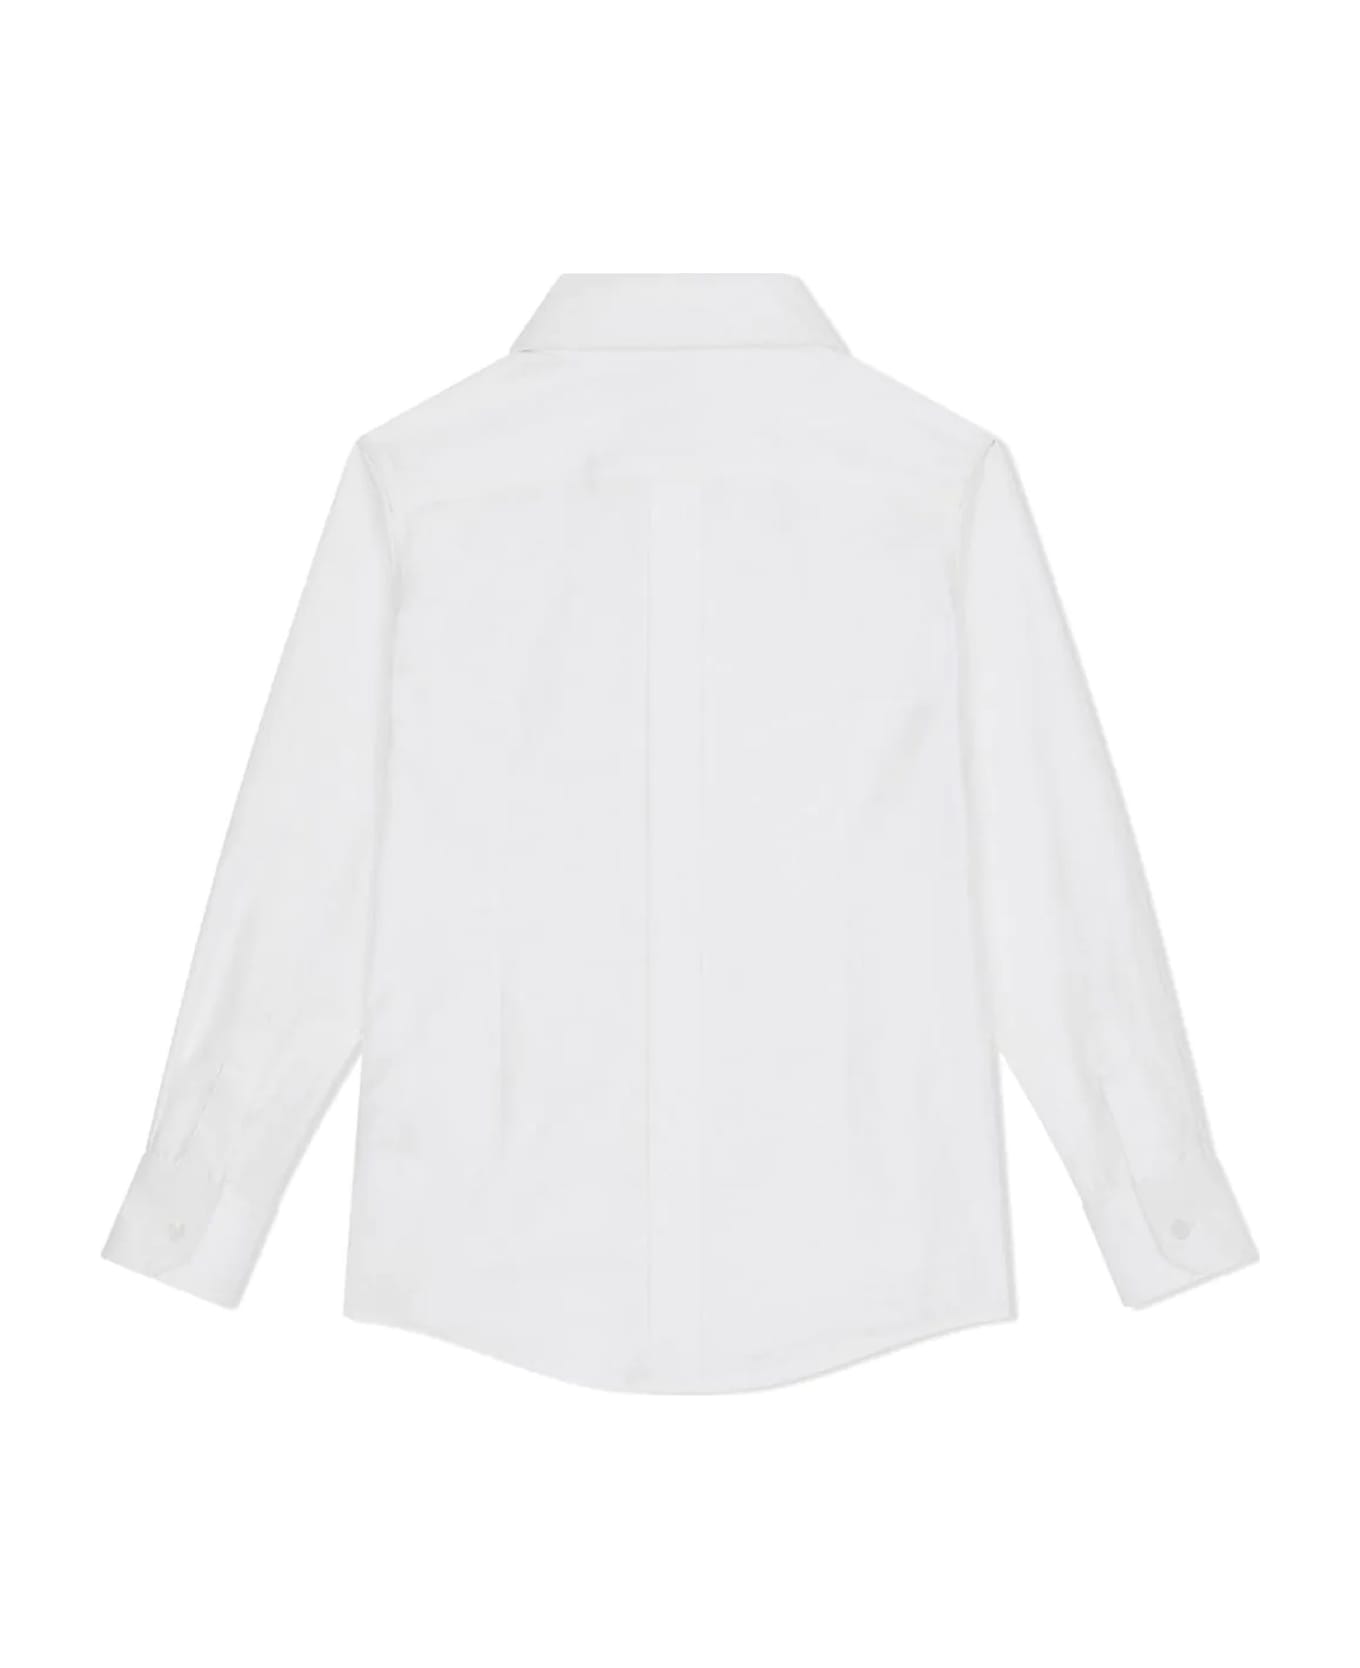 Dolce & Gabbana Shirts White - White